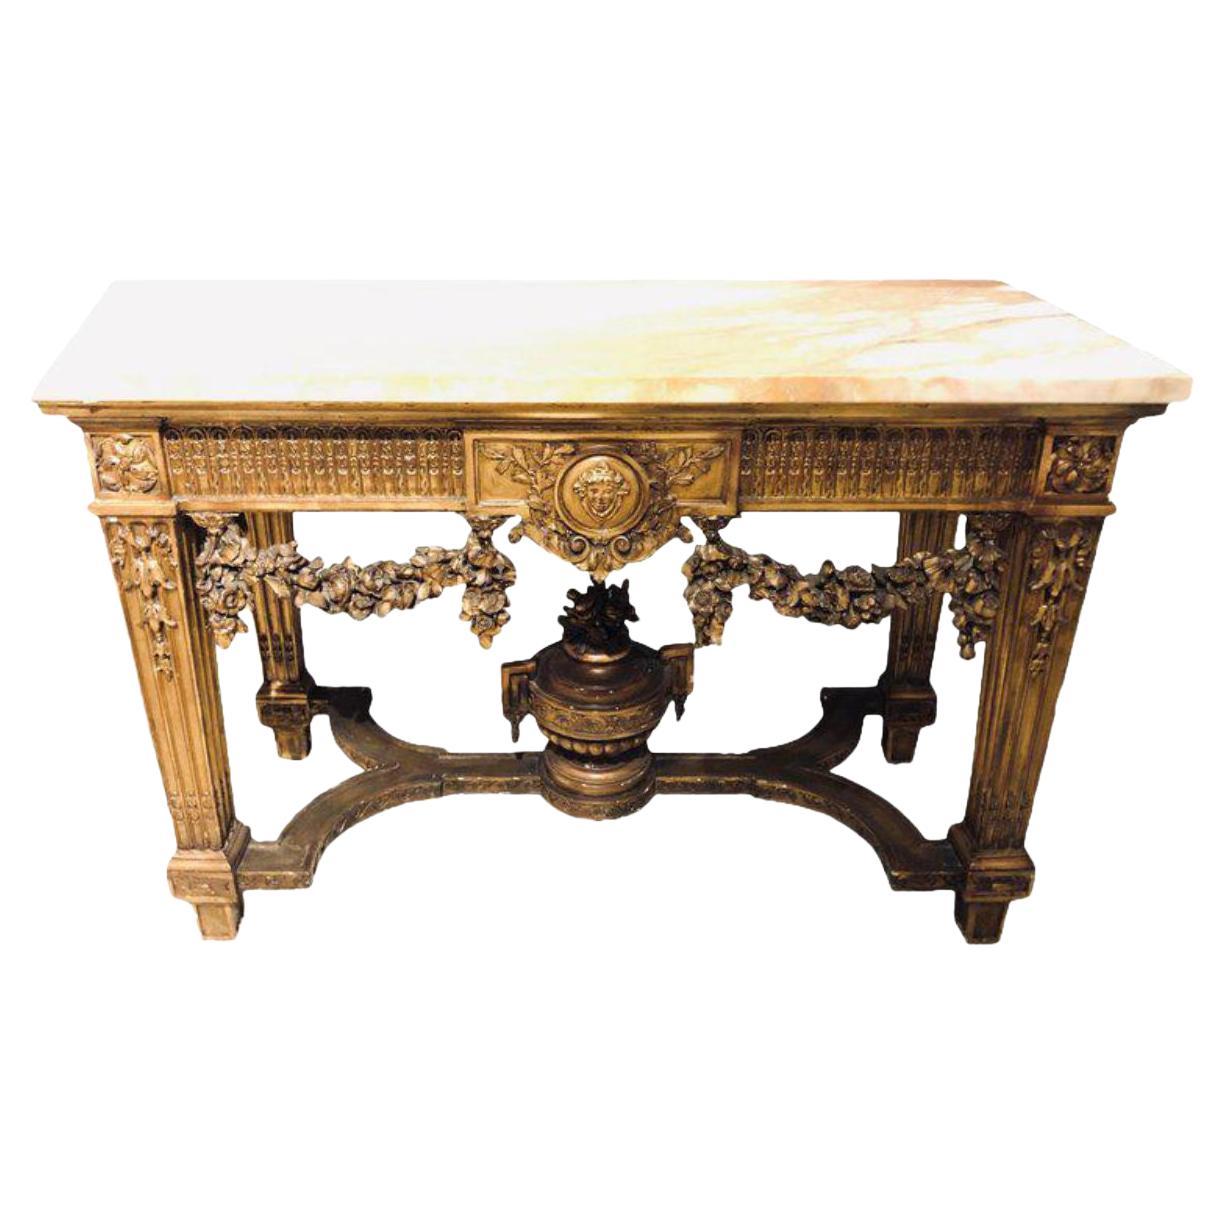 Konsole im Louis-XV-Stil aus vergoldetem Holz mit Marmorplatte, Flur- oder Mitteltisch